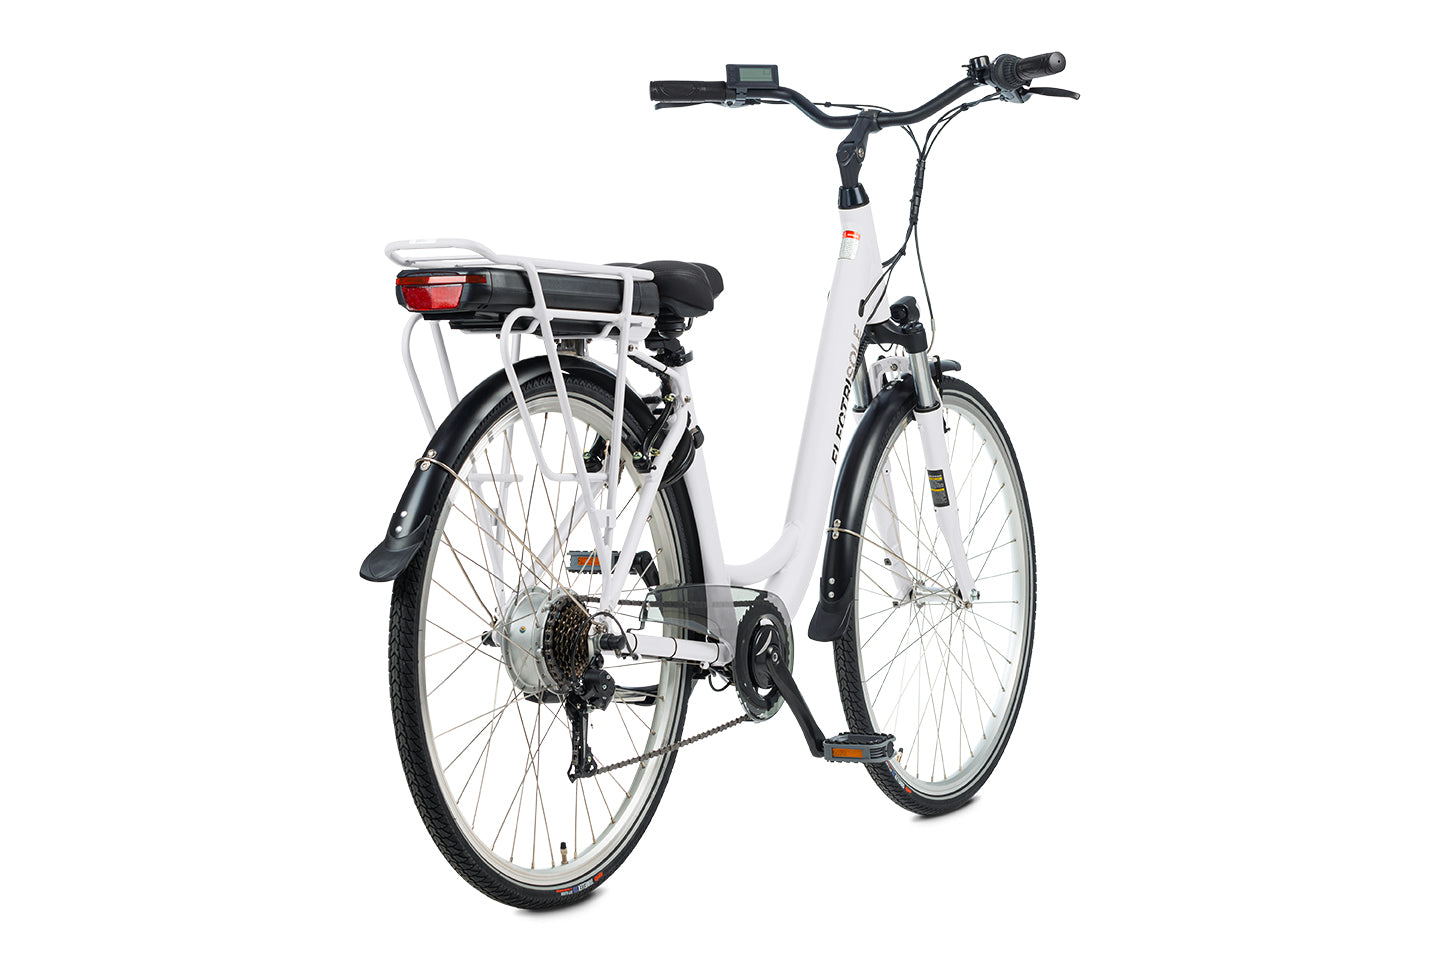 Bicicletta elettrica stile olandese - SOLE